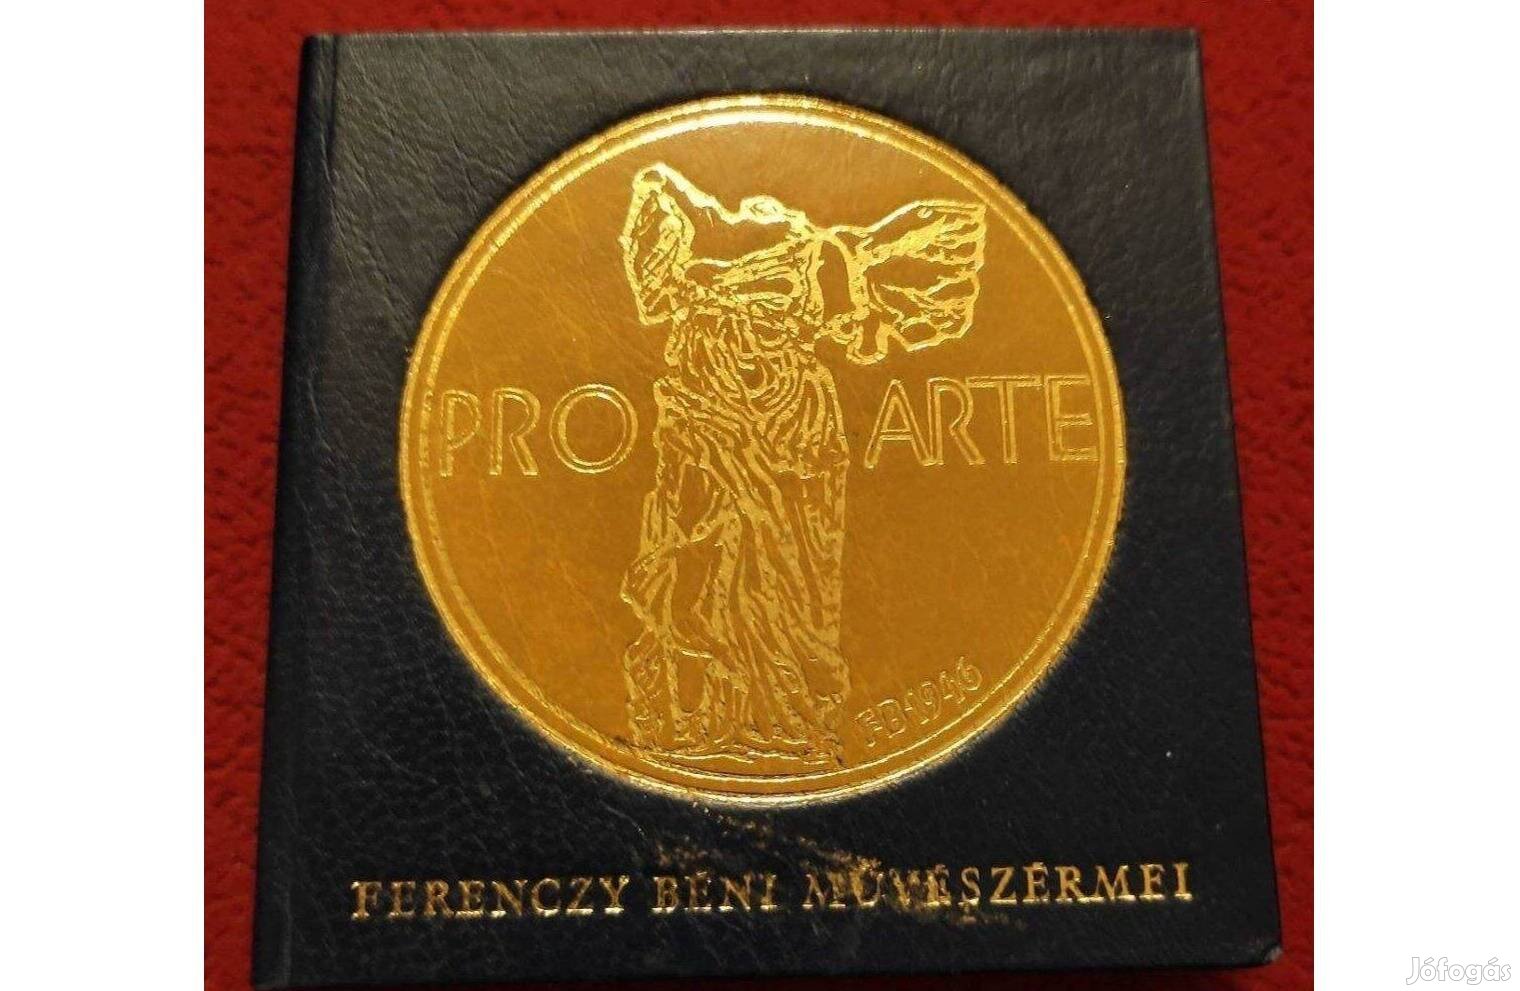 Ferenczy Béni művészérmei - minikönyv, számozott példány